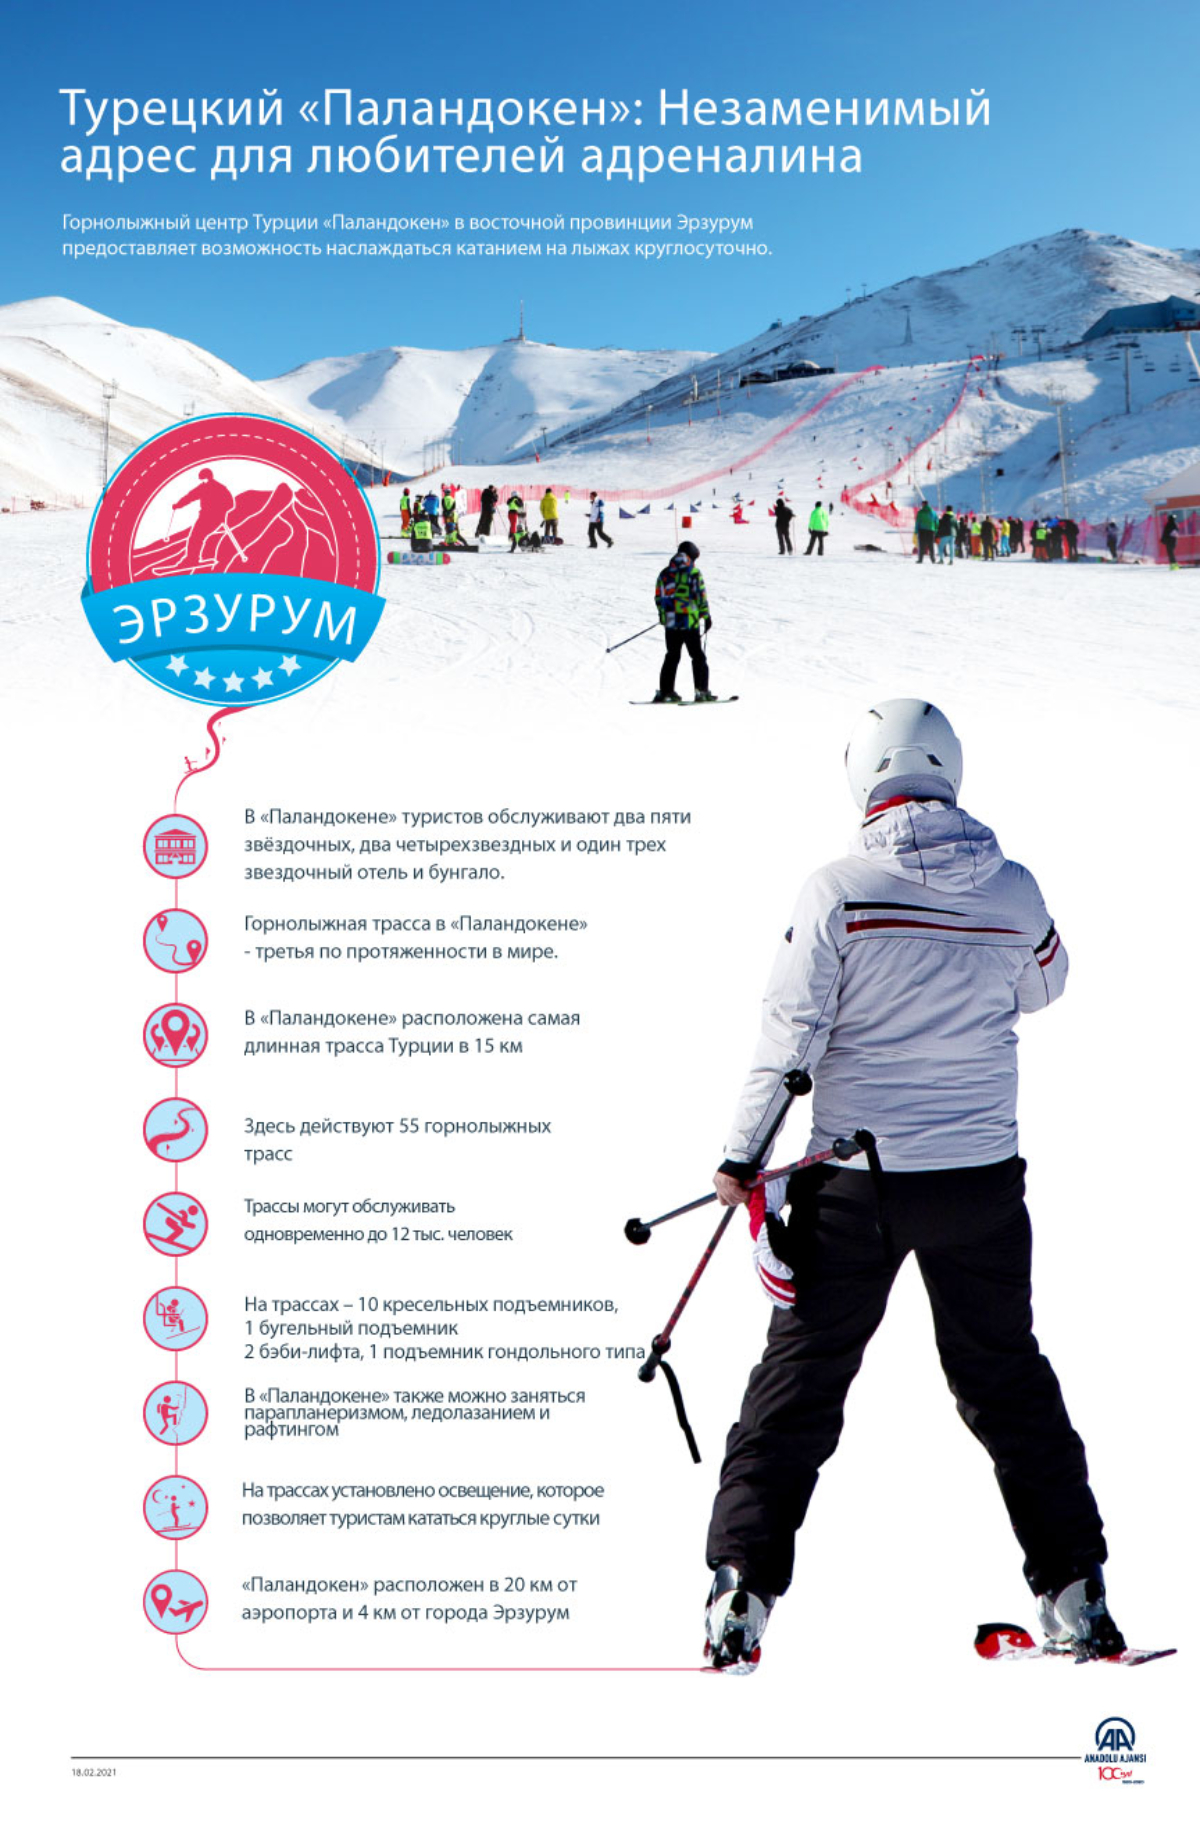 Турецкий «Паландокен»: катание на лыжах в любое время суток